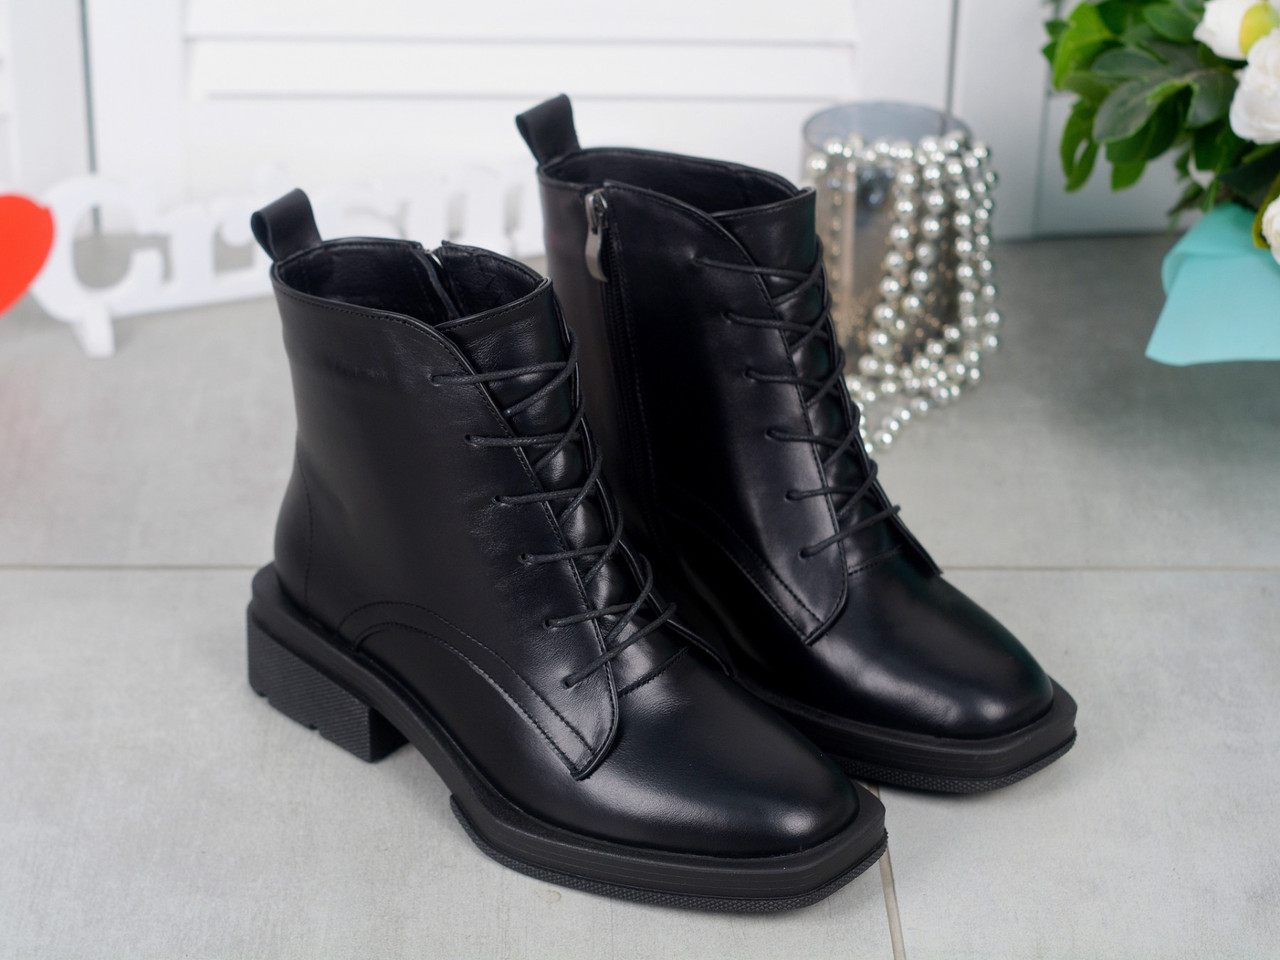 Зимові шкіряні черевики жіночі чорні на шнурівці відмінної якості